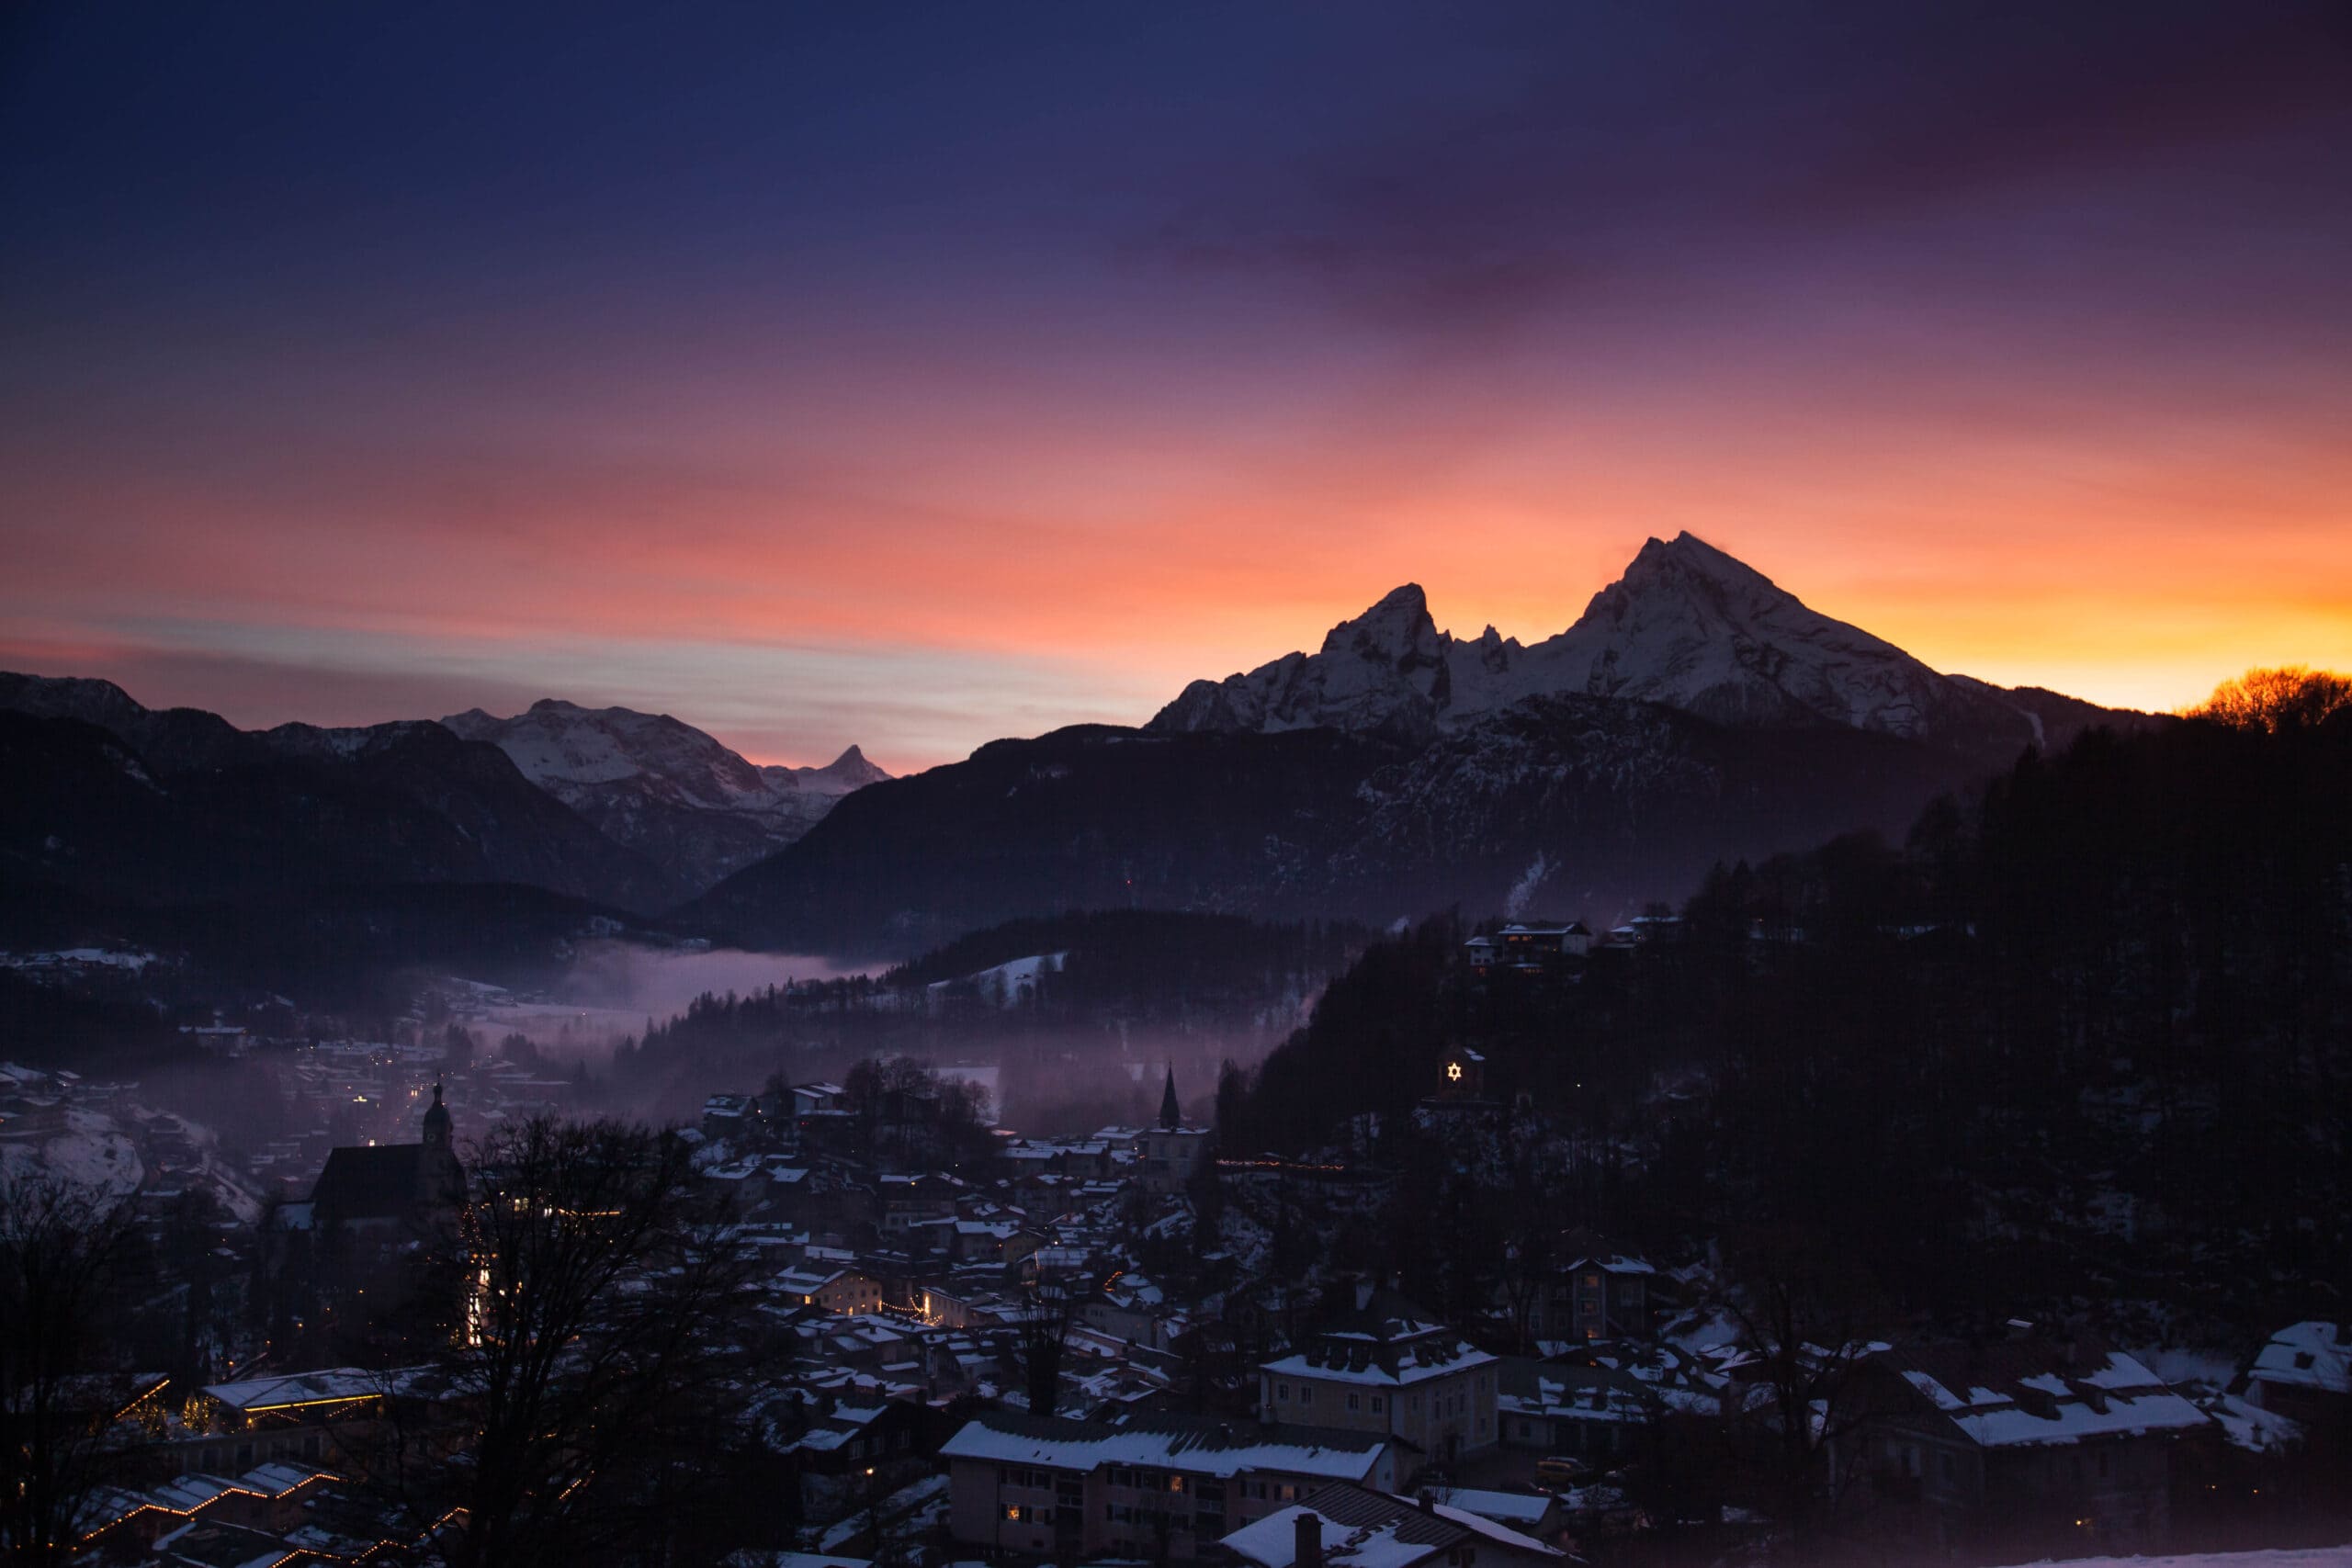 Alpen, Bayern, Berchtesgaden, Natur, Sonnenuntergang, Sunset, Urlaub, Winter